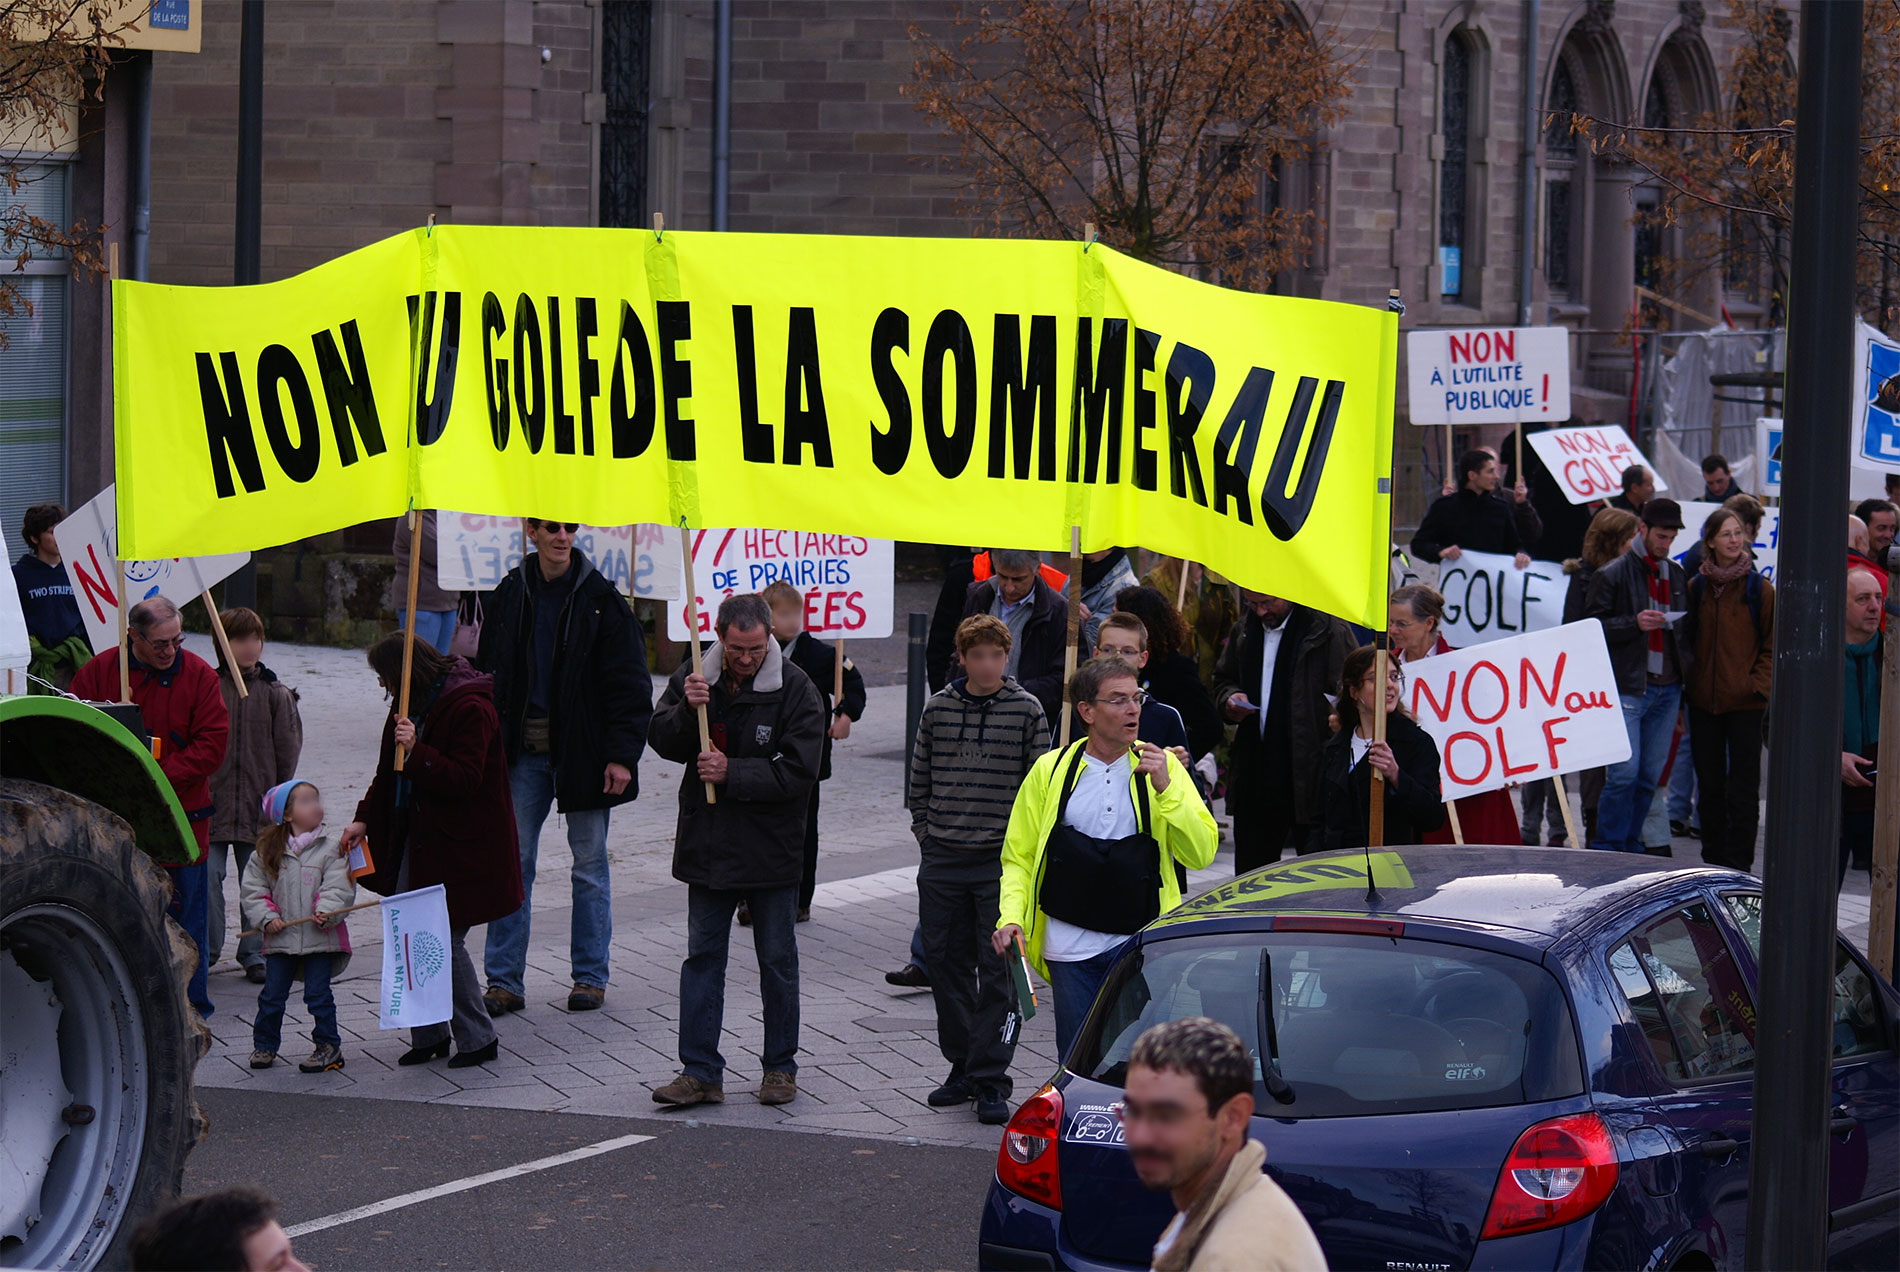 [mobilisation] Marche citoyenne contre le projet de Golf de la Sommerau (22 nov)